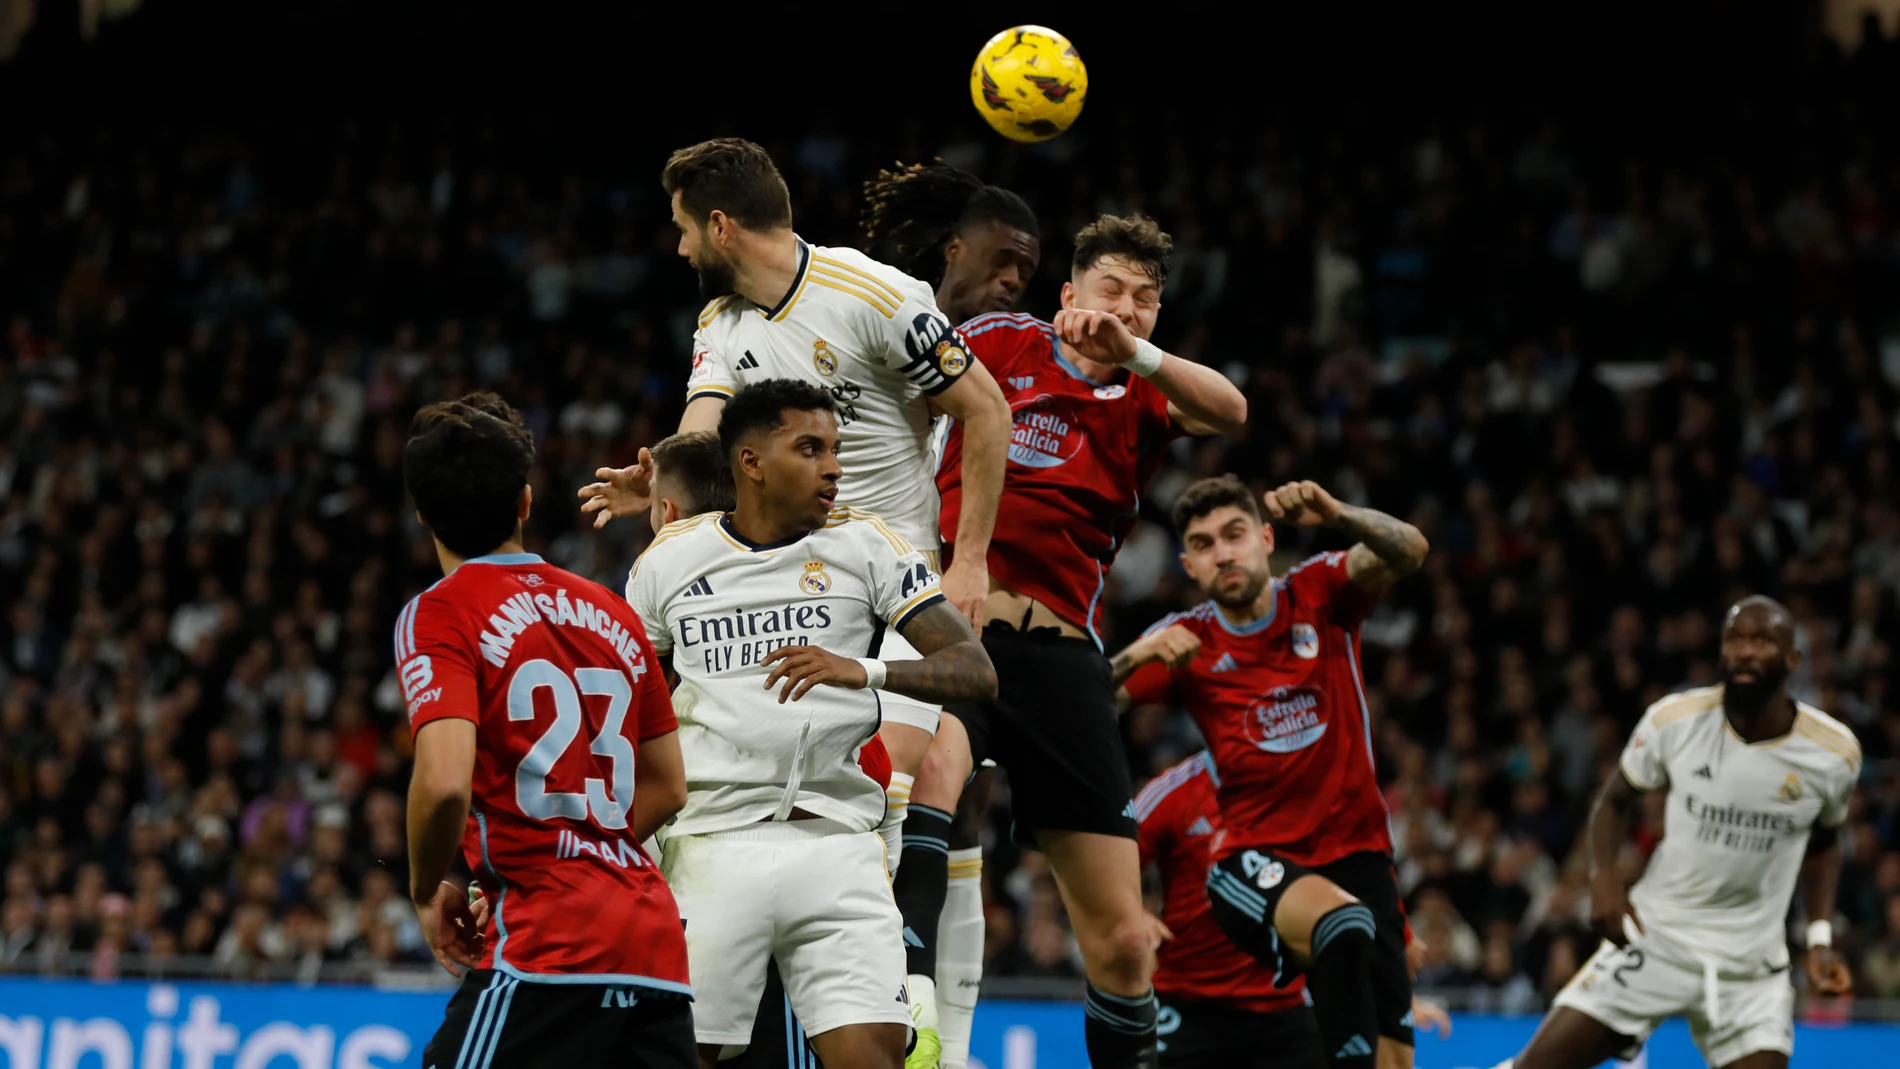  Encuentro de liga entre el Real Madrid y el Celta de Vigo. © Jesús G. Feria.